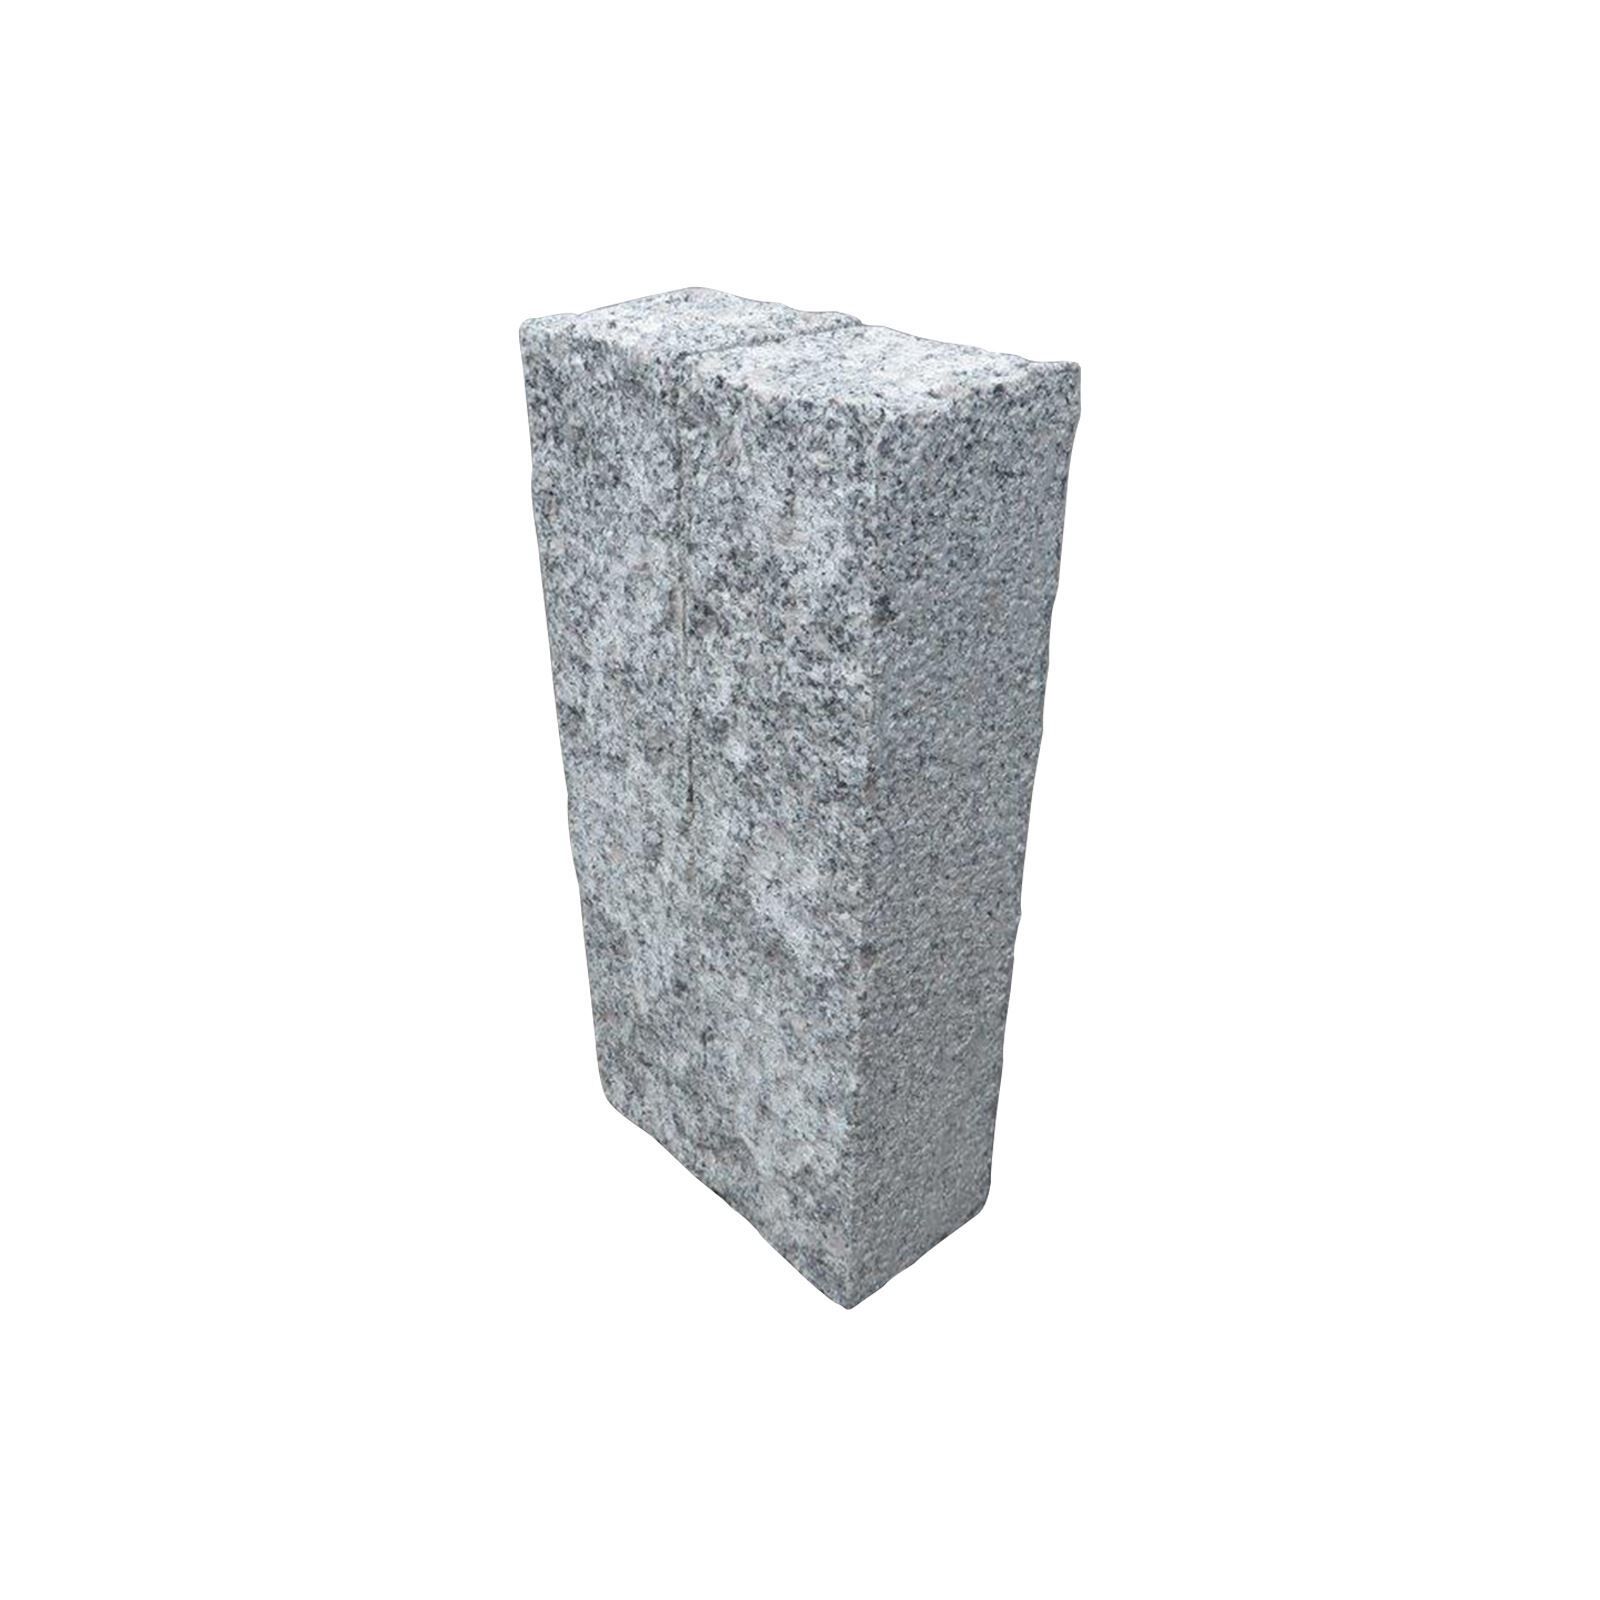 Granit DUO-Palisaden, grau, 12x12 cm, 2 Seiten gestockt, Rest gespitzt